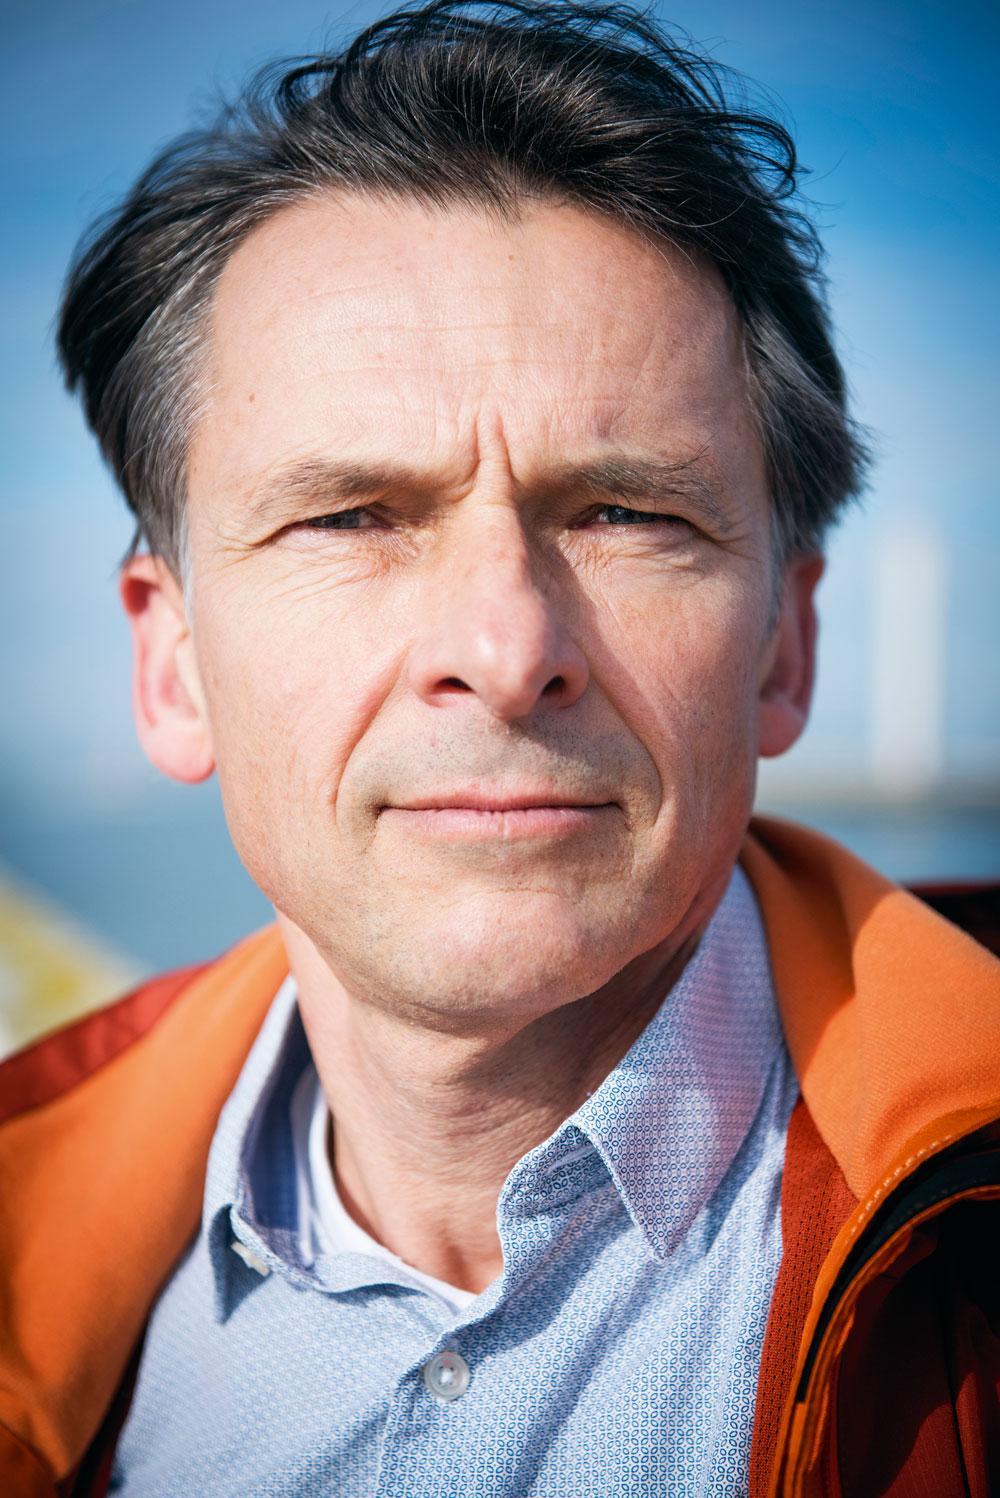 Bioloog Jan Seys over de stijgende zeespiegel: 'We moeten rekening houden met een worstcasescenario'